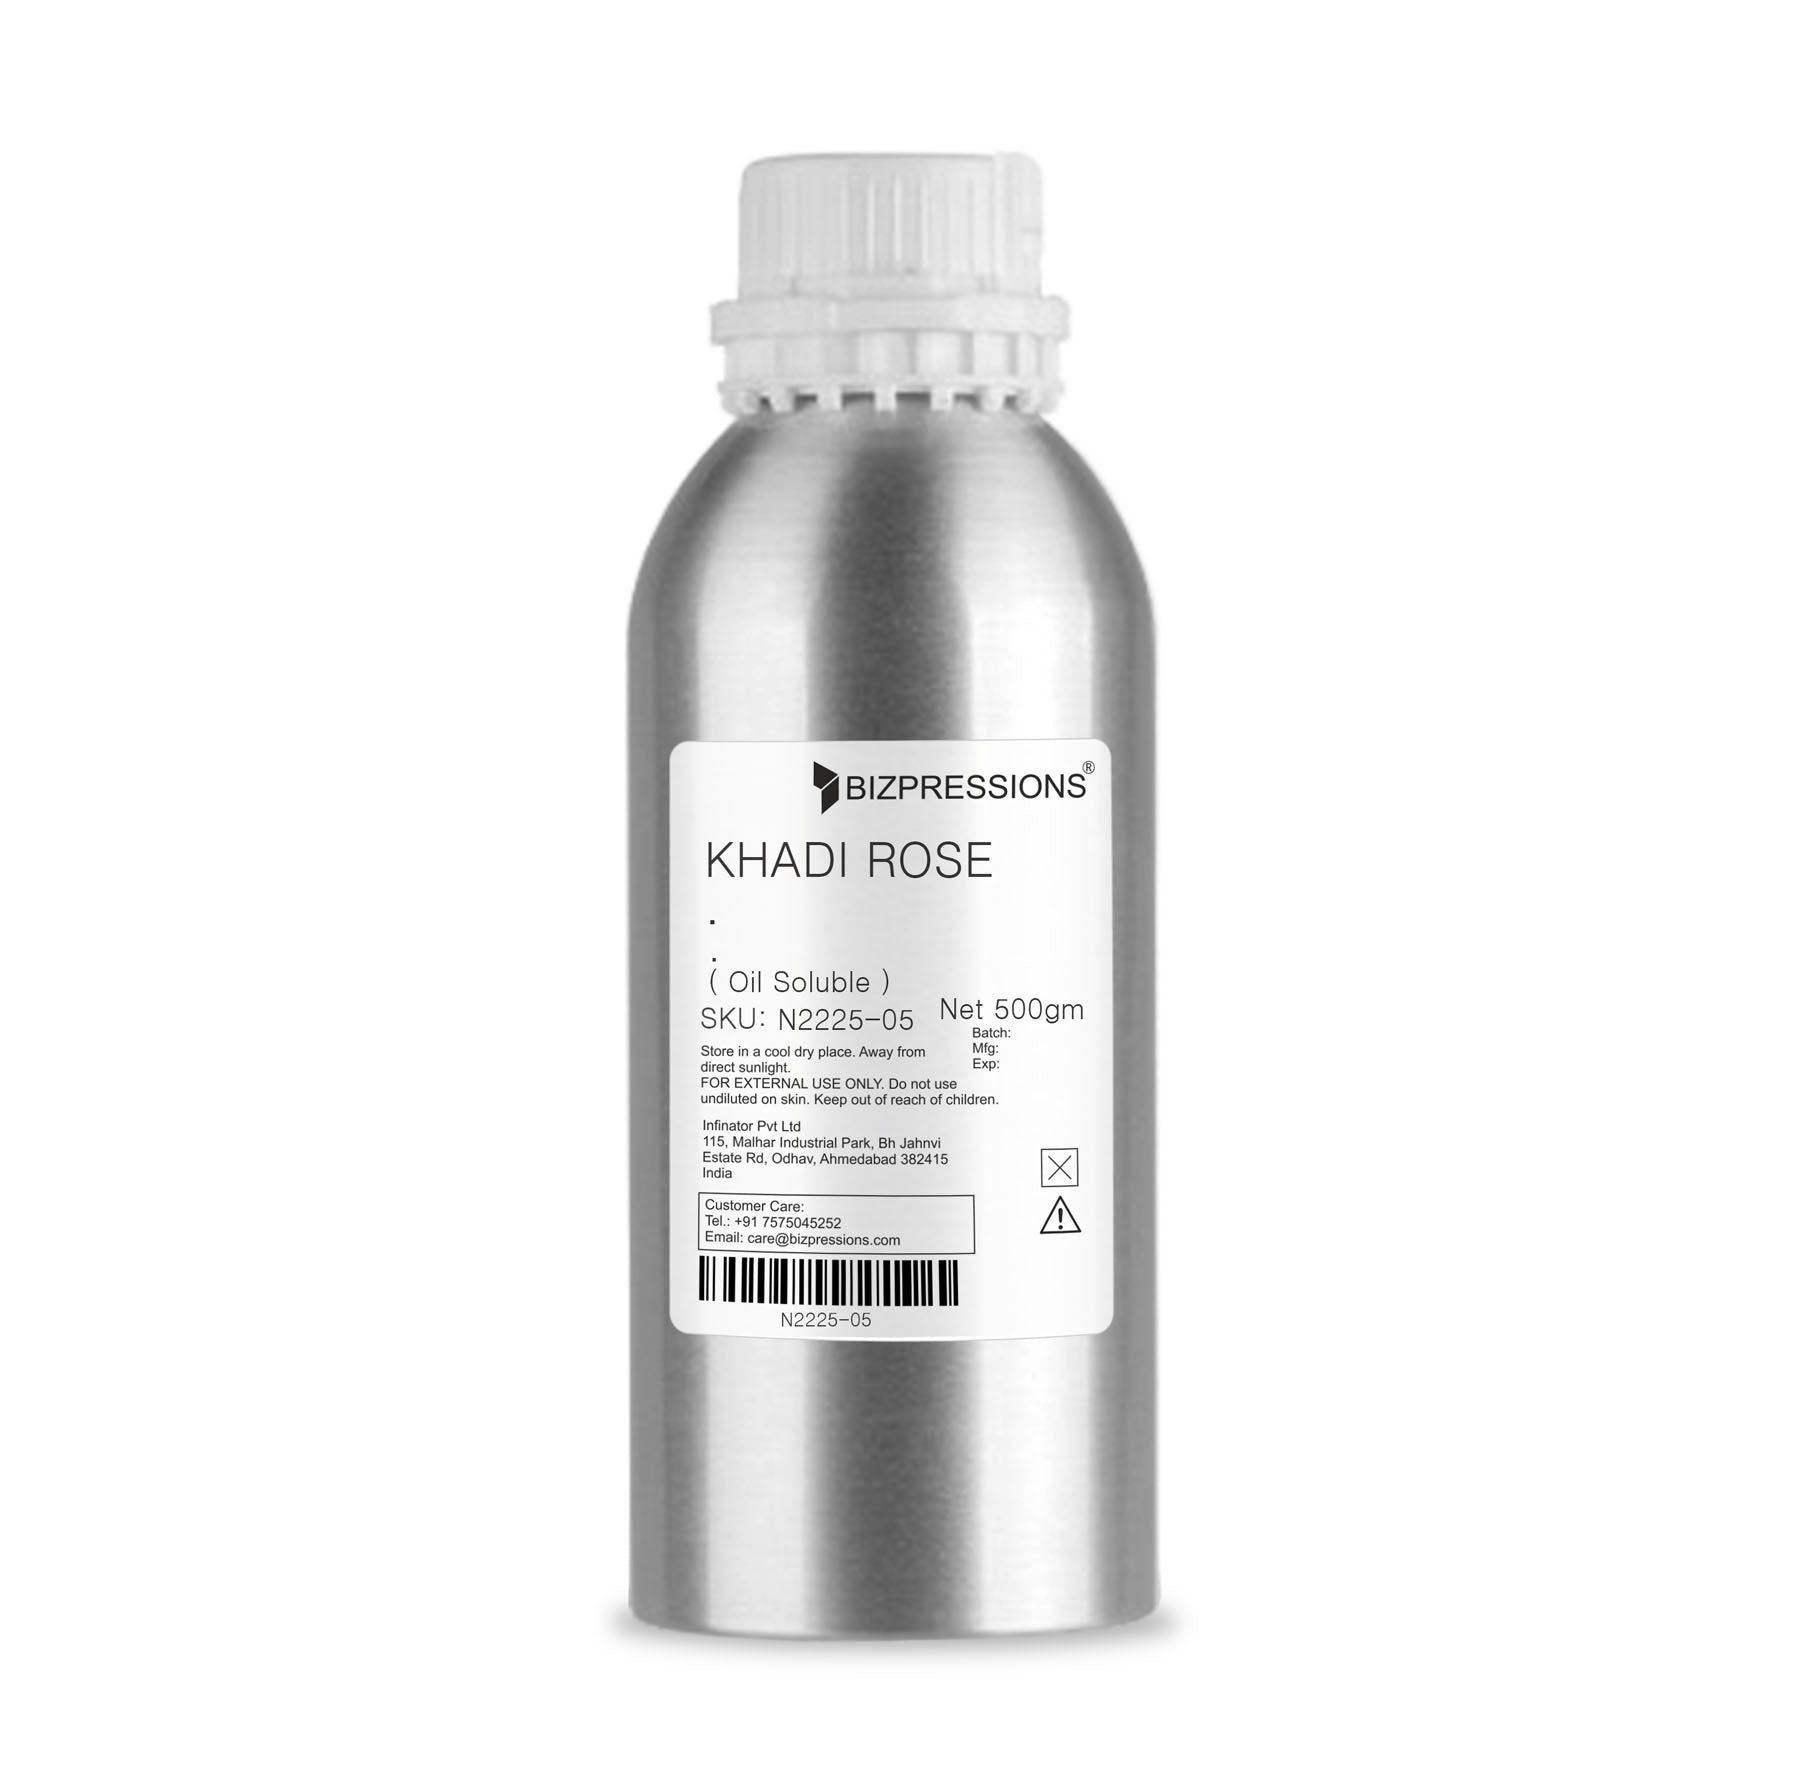 KHADI ROSE - Fragrance ( Oil Soluble ) - 500 gm